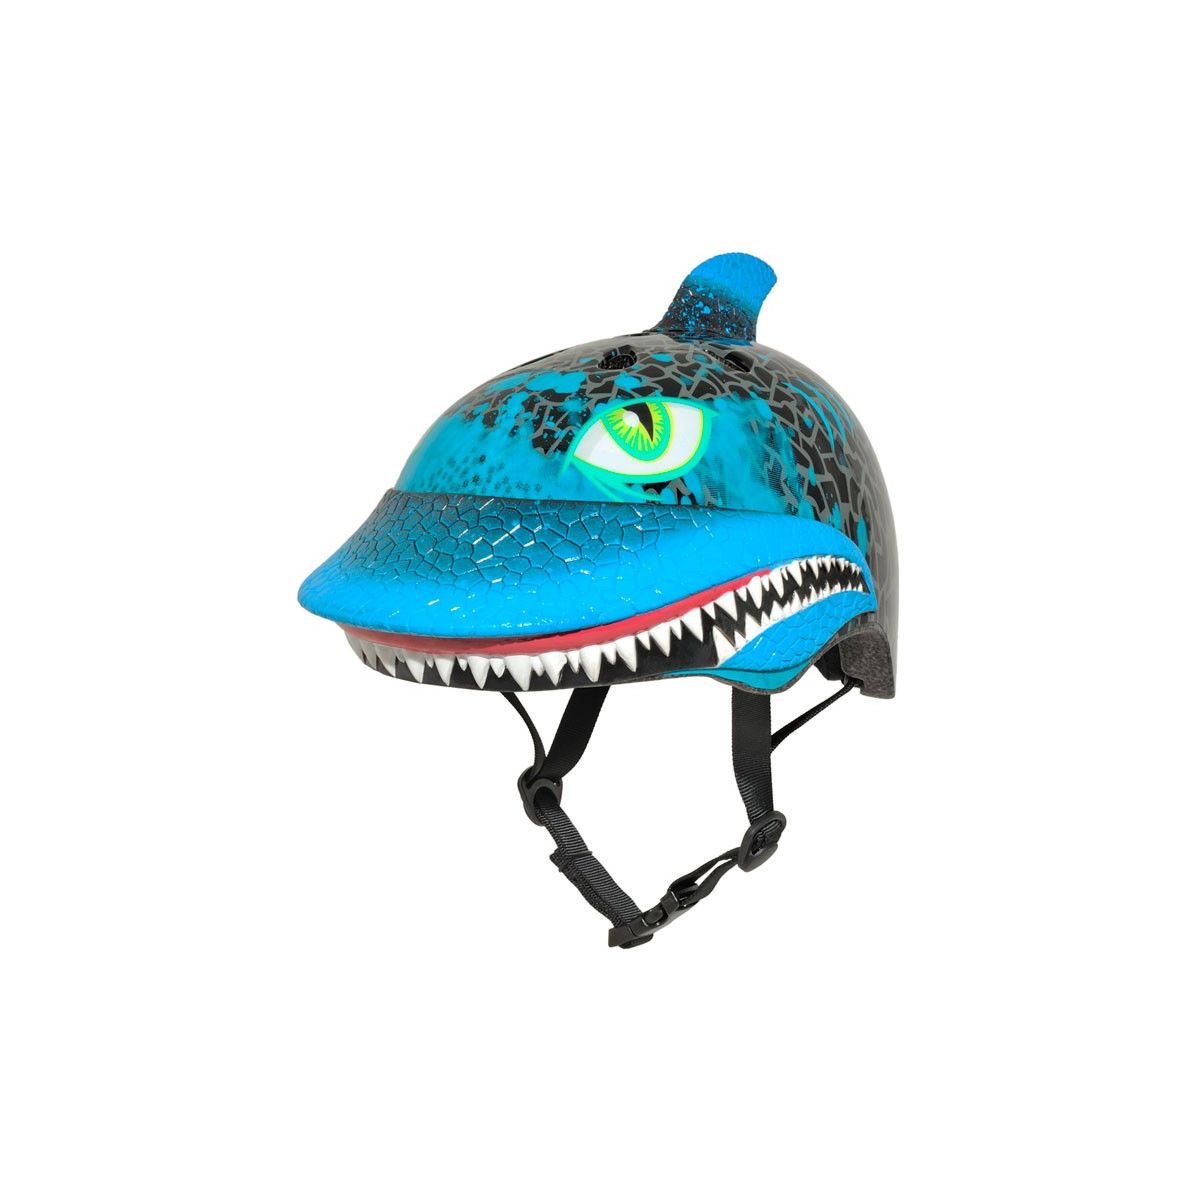 C-PREME - Casco Infantil Child Shark Attax en color azul y negro | casco bicicleta niño niña | tiburón